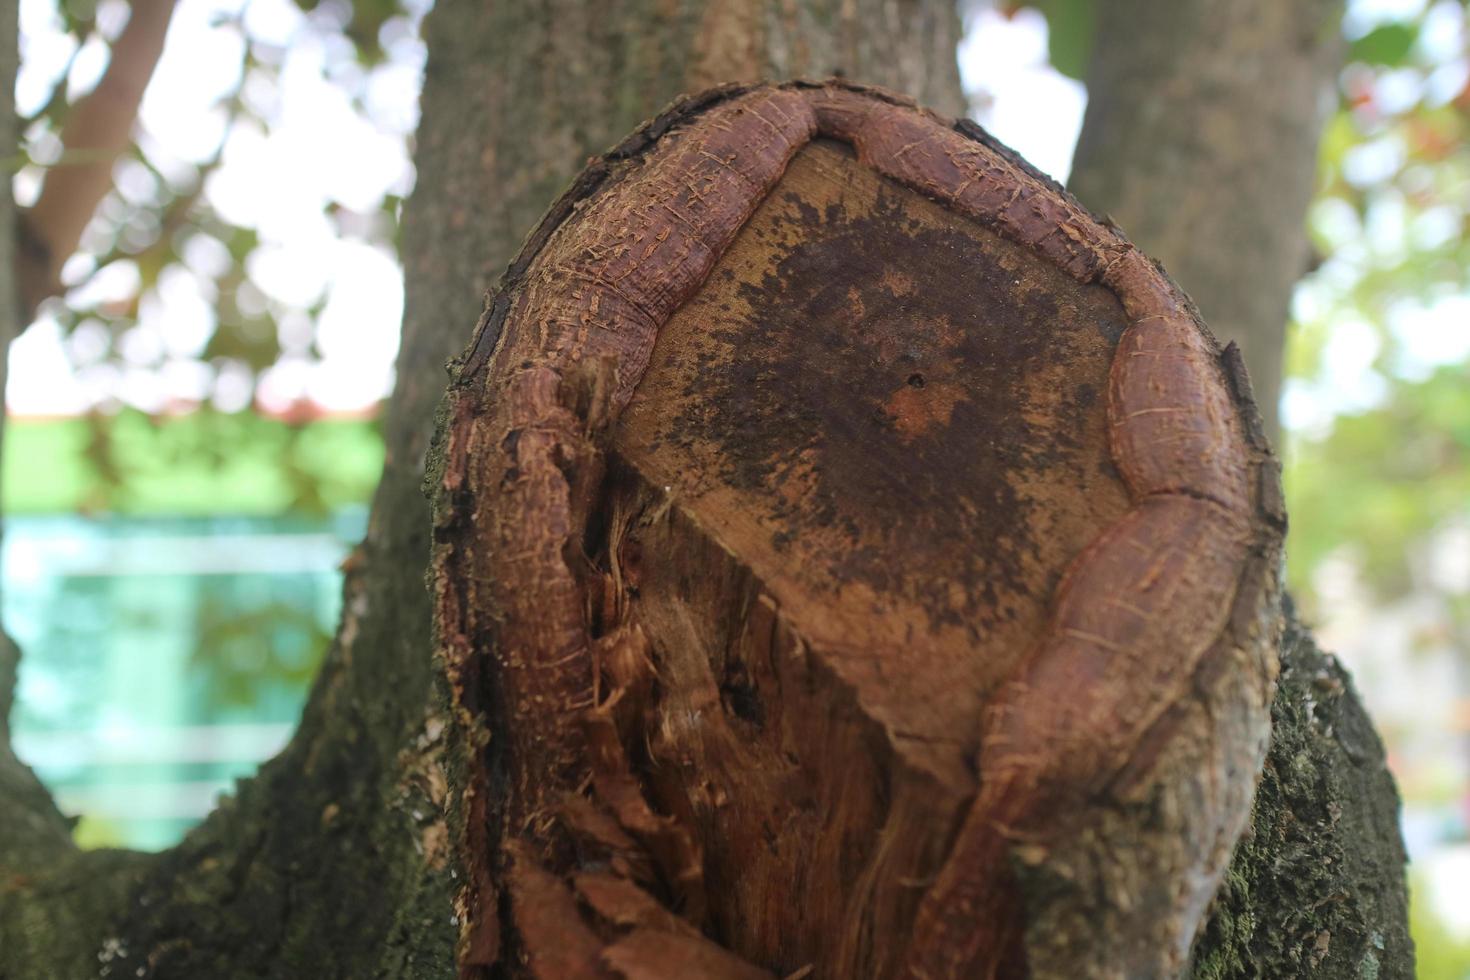 The former ketapang tree trunk photo